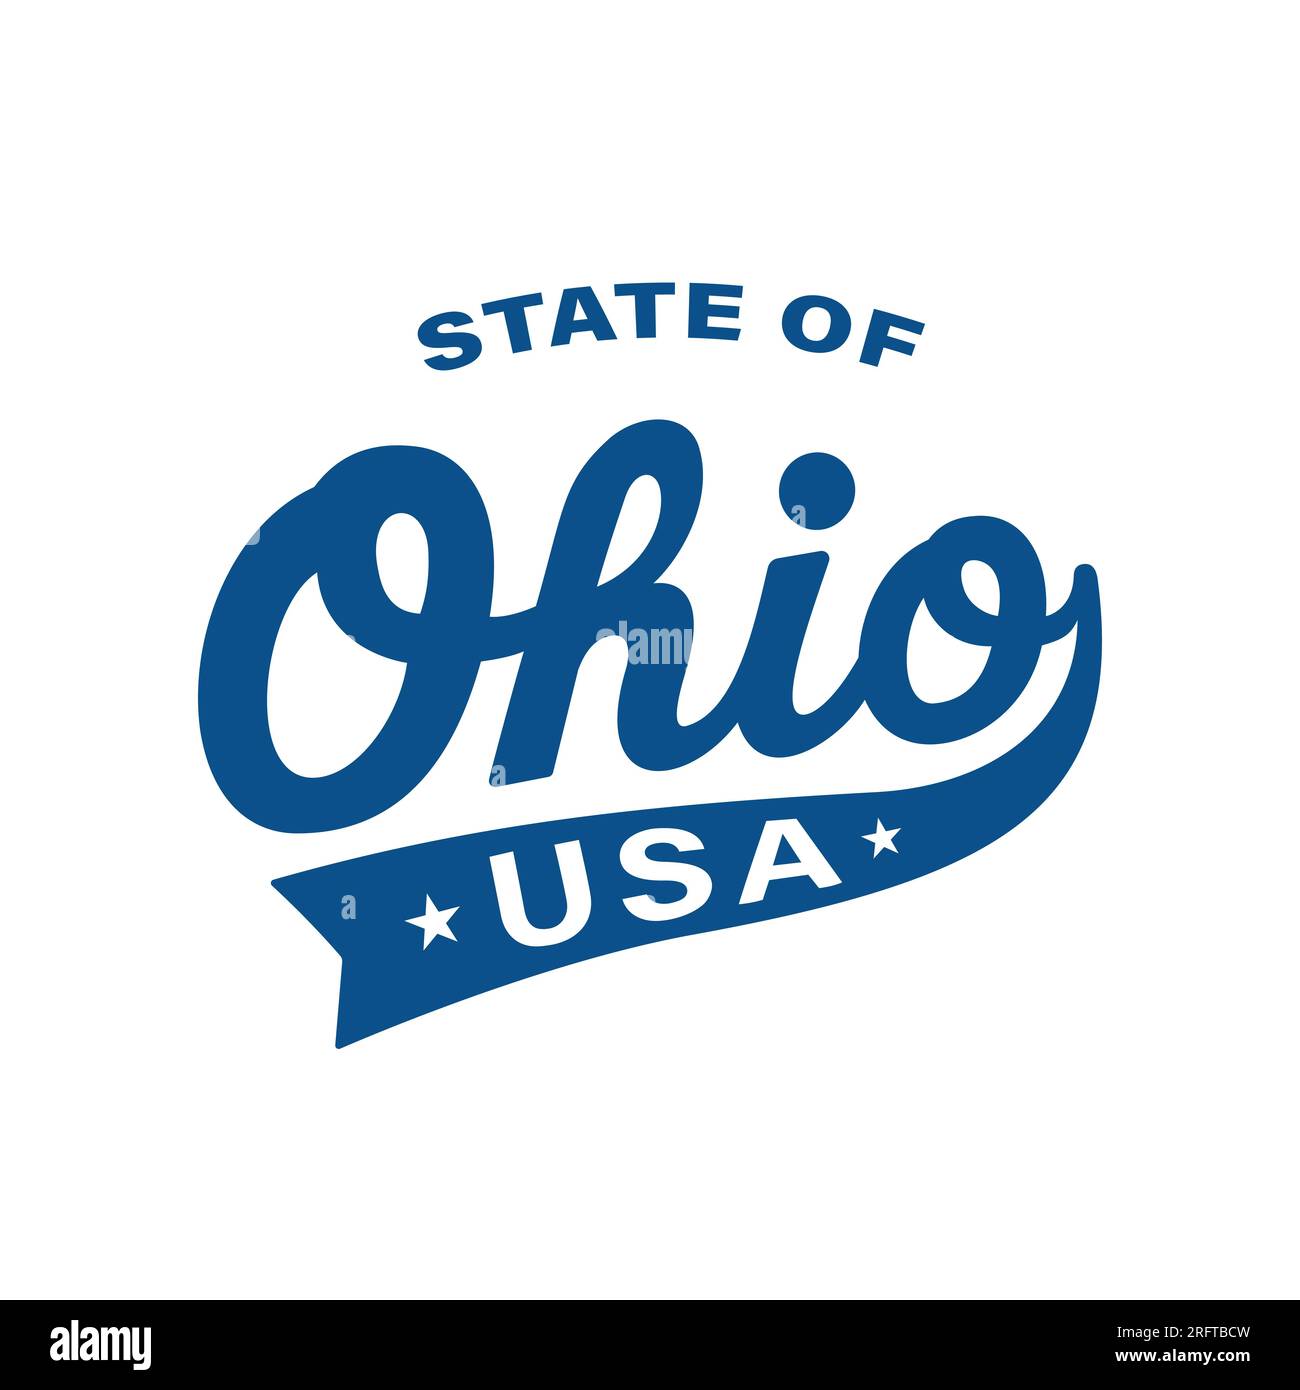 Design delle lettere dello stato dell'Ohio. Ohio, Stati Uniti, progettazione tipografica. Ohio, text design. Vettore e illustrazione. Illustrazione Vettoriale